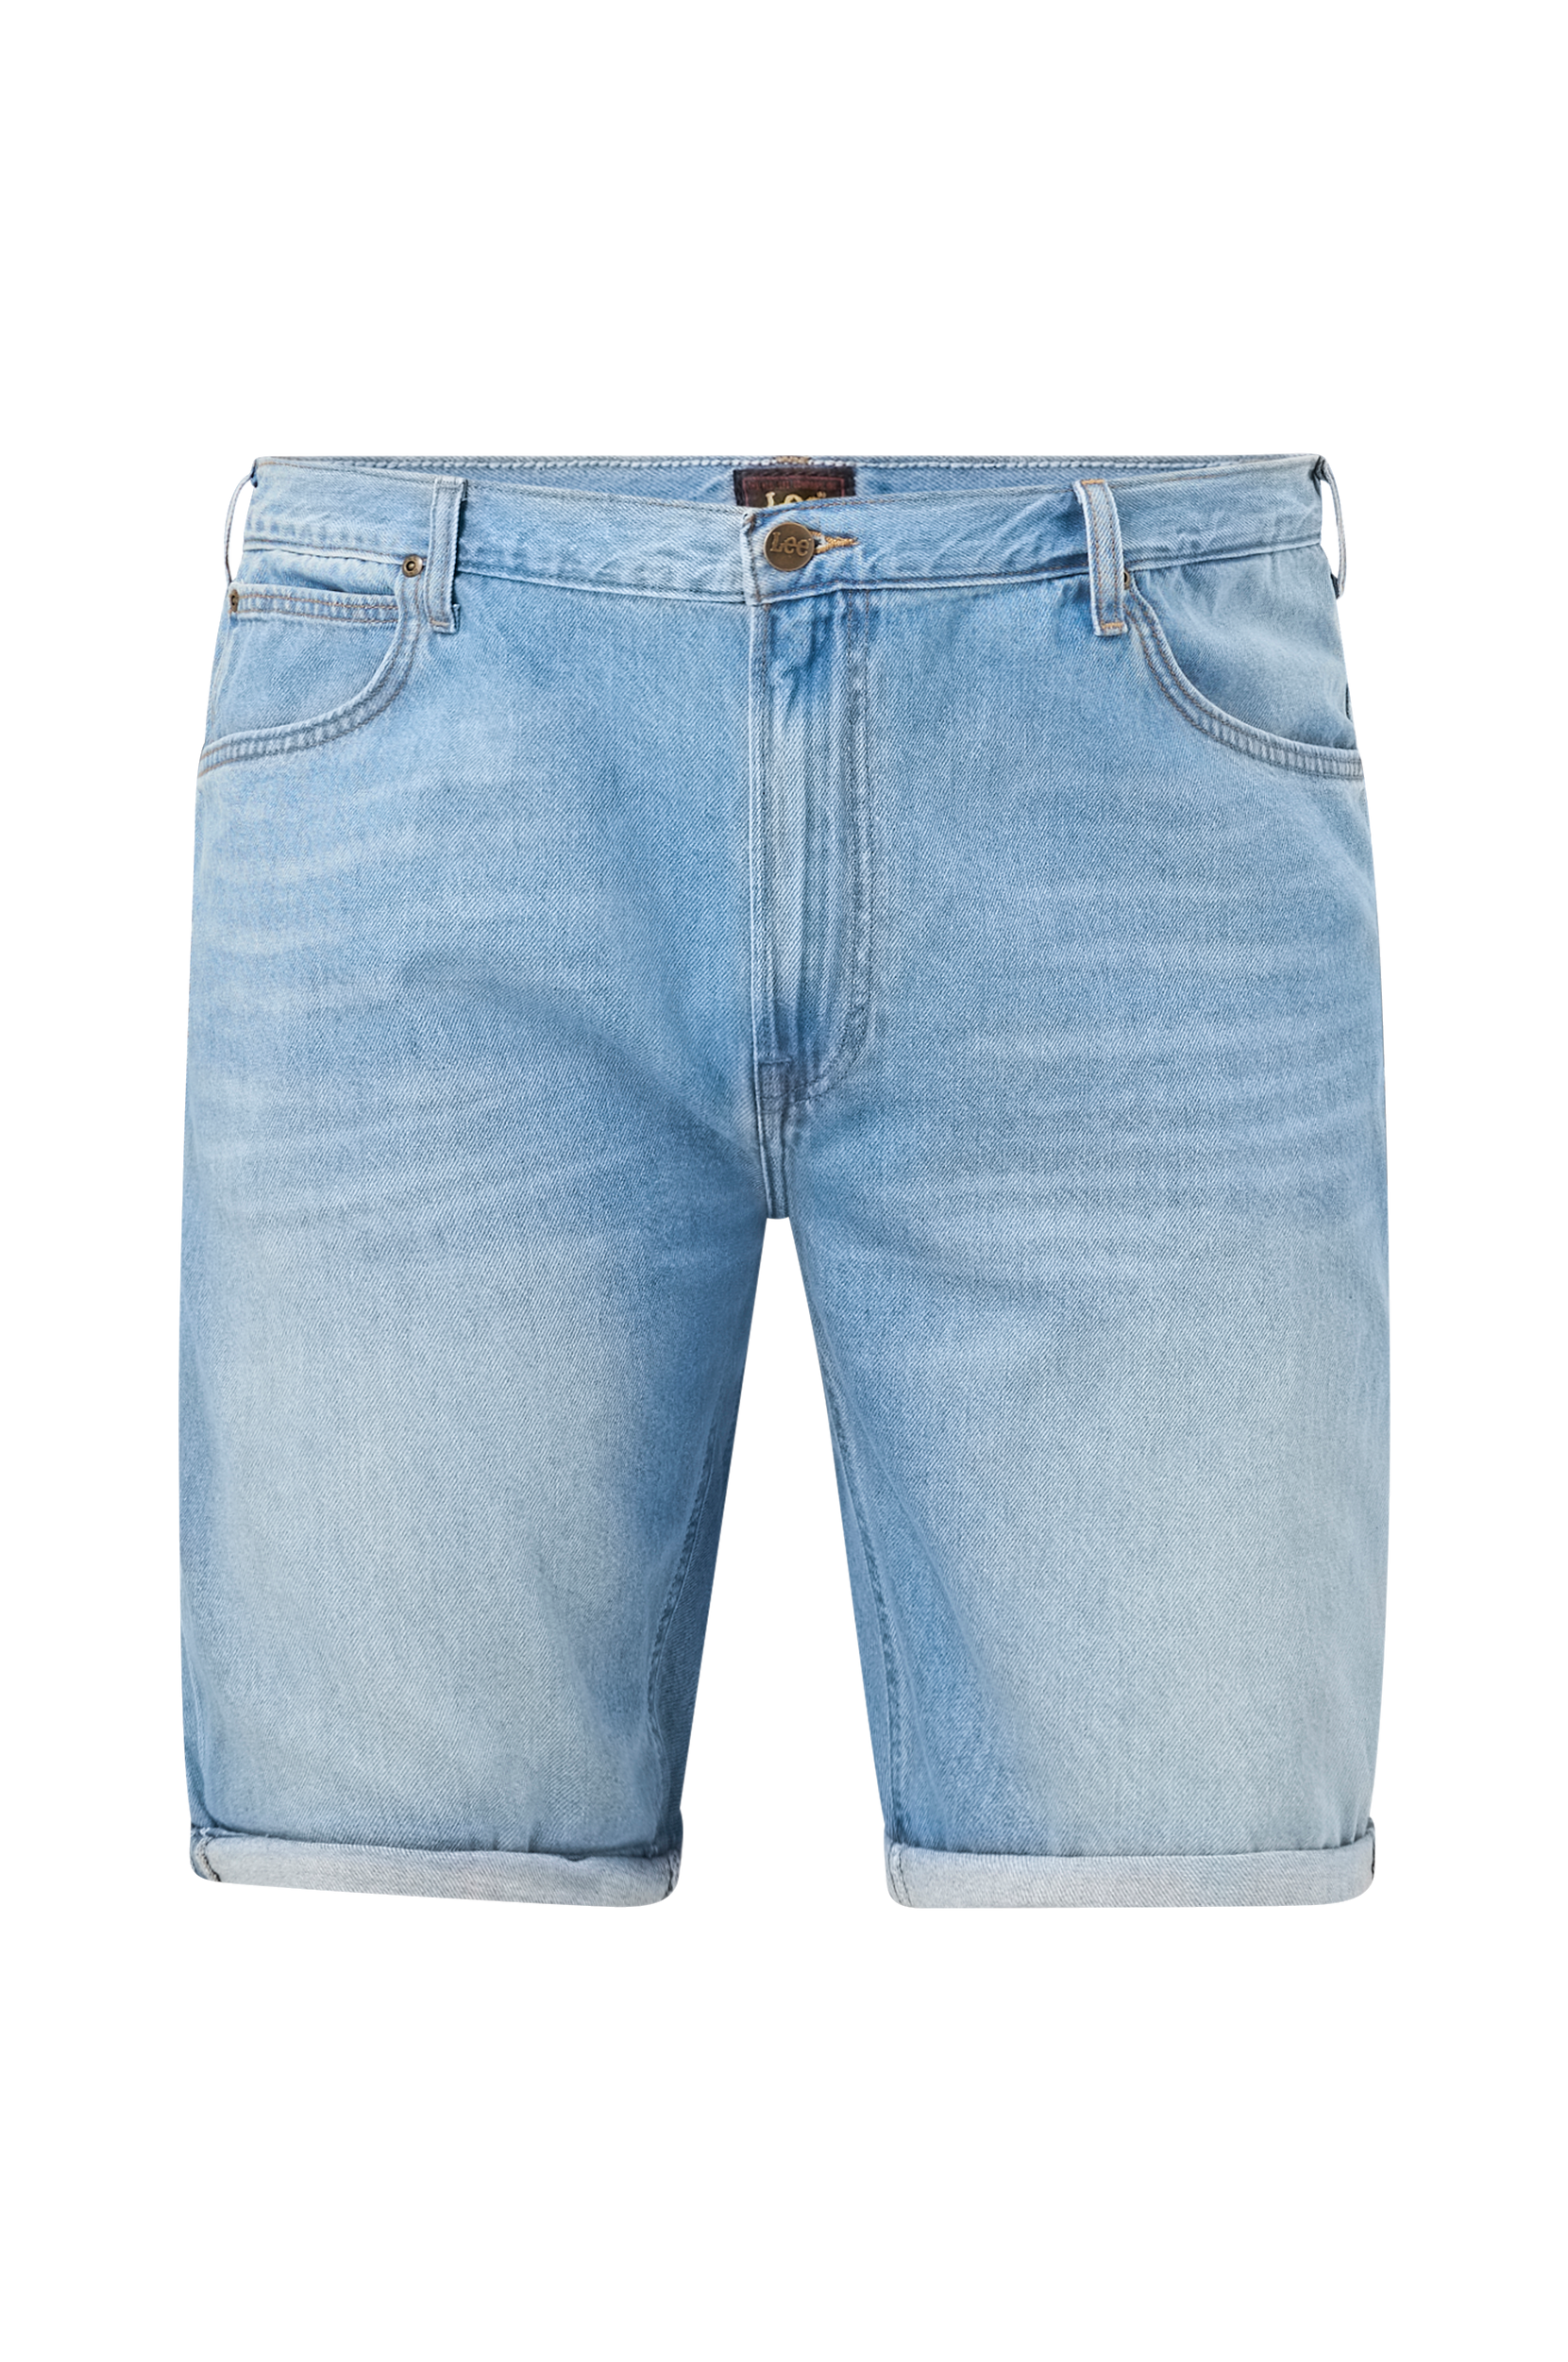 Lee - Jeansshorts 5 Pocket Shirt - Blå - W29